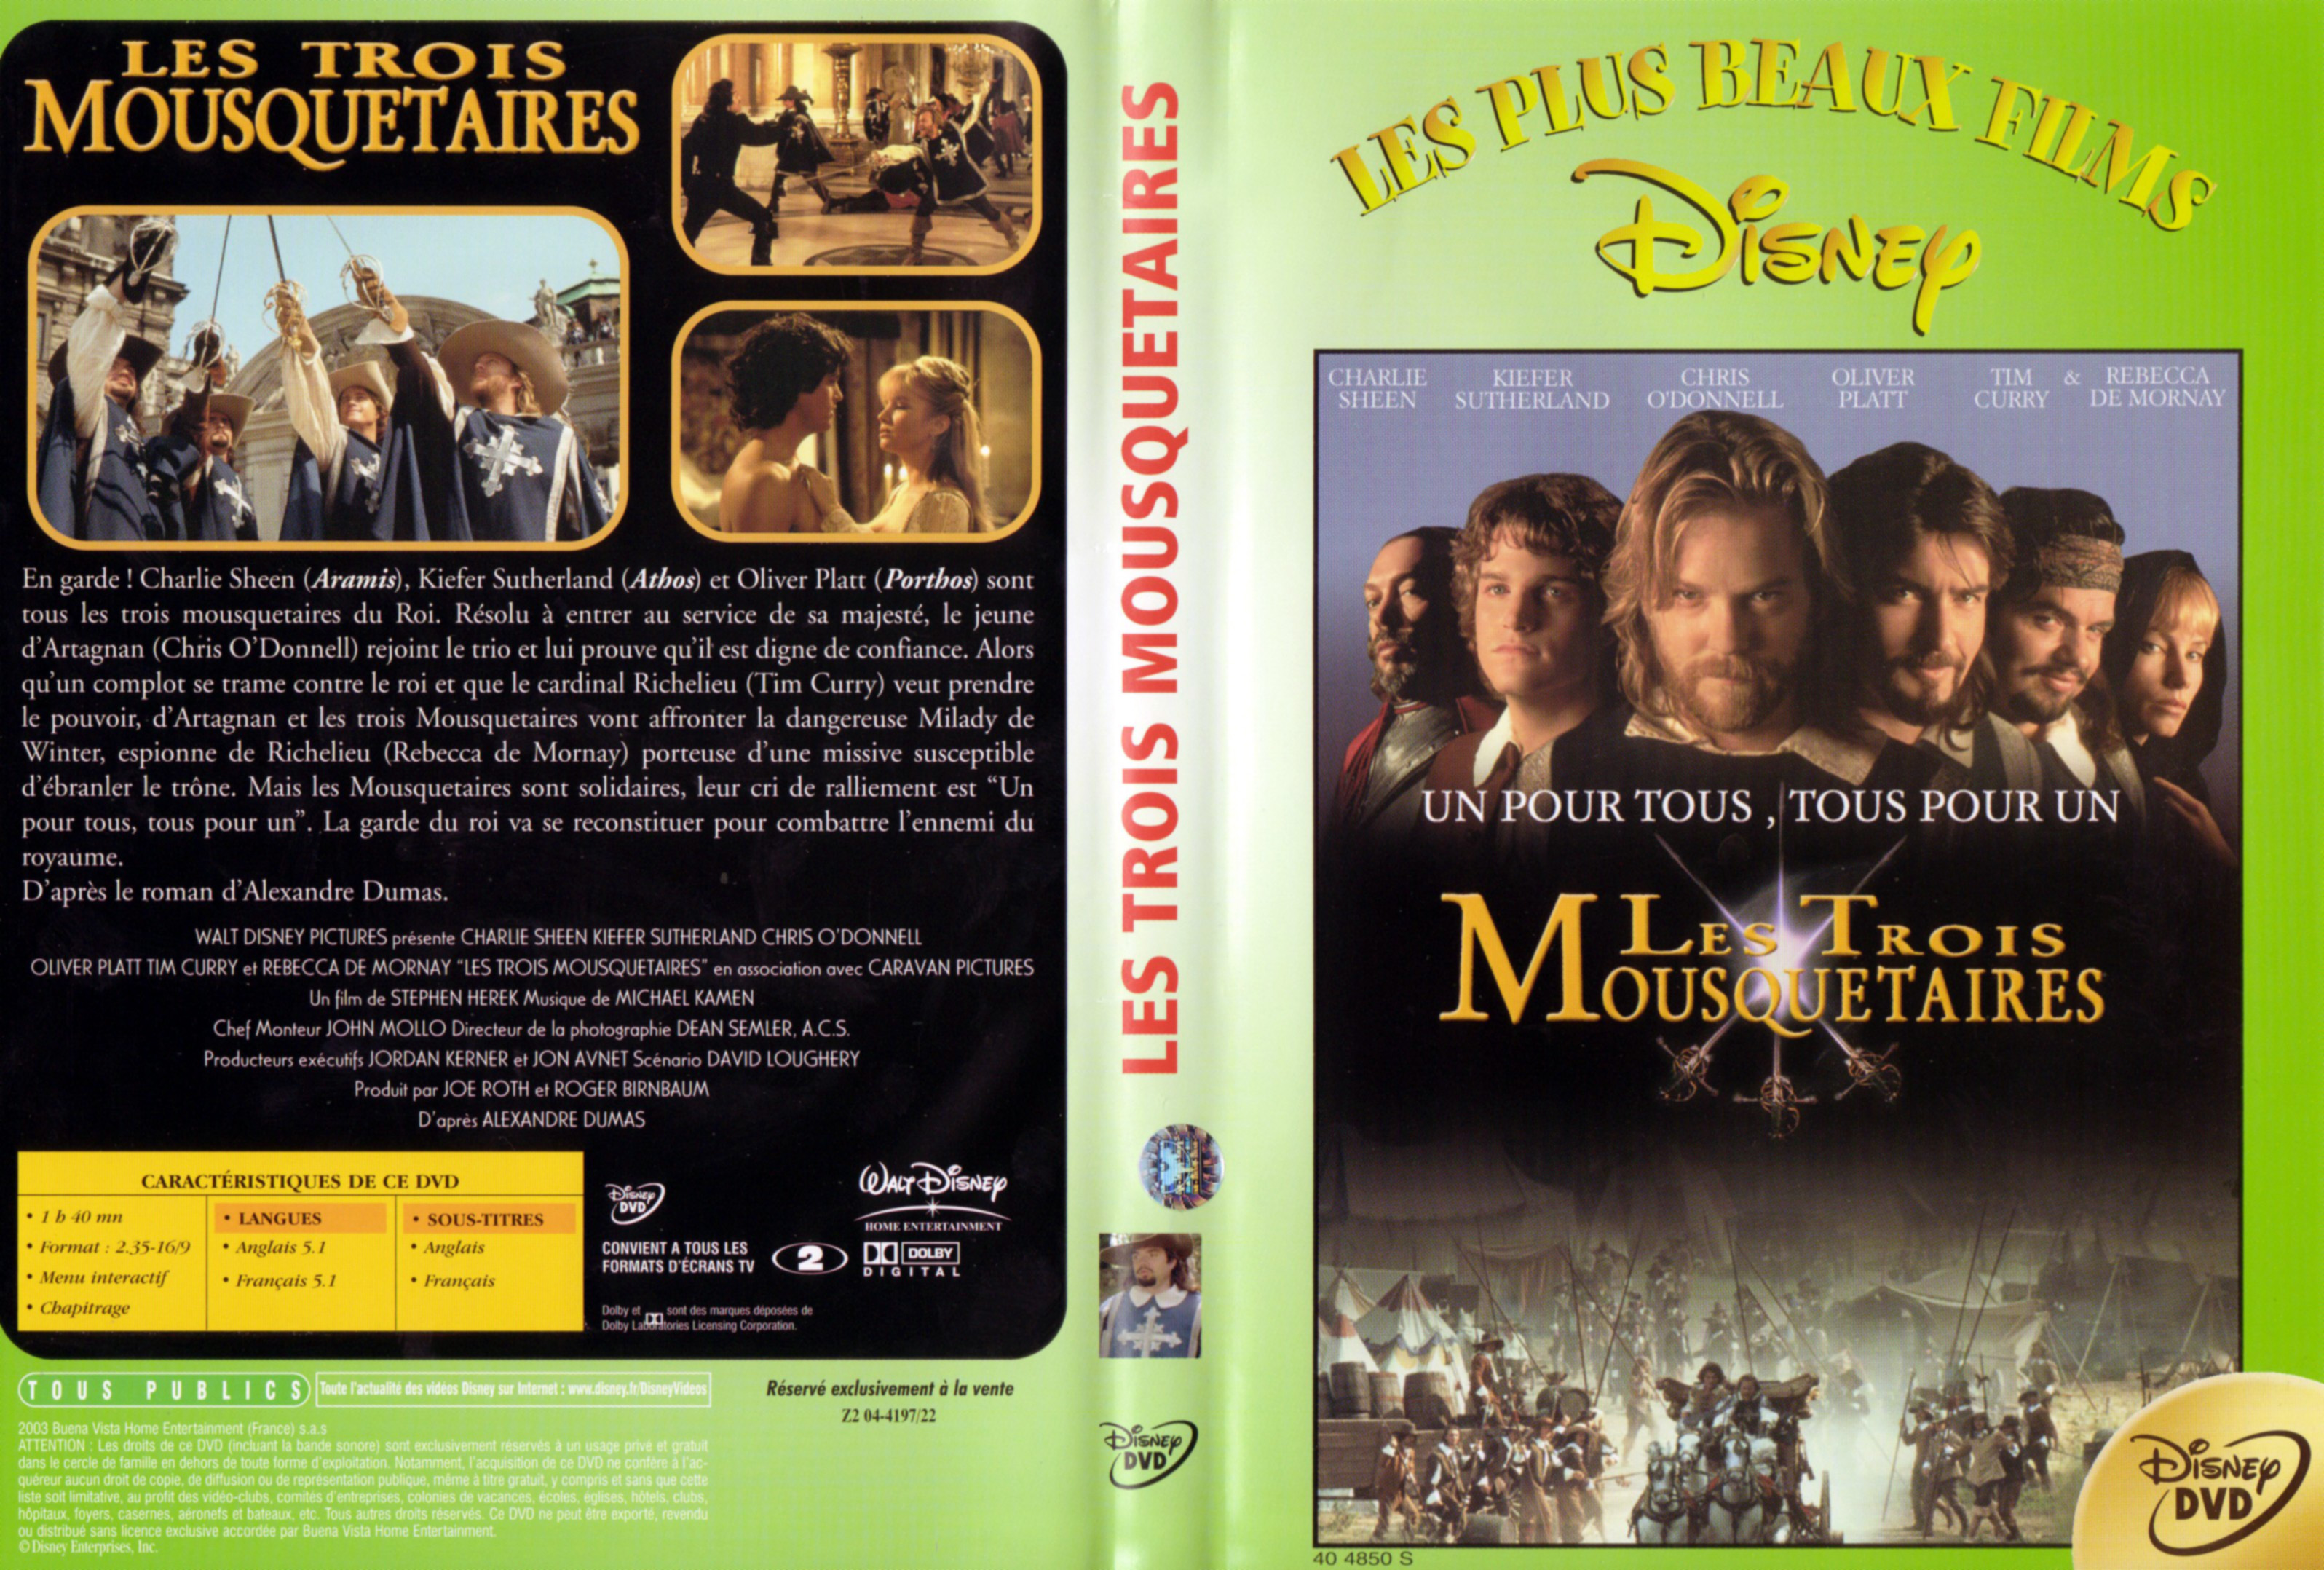 Jaquette DVD Les trois mousquetaires v2